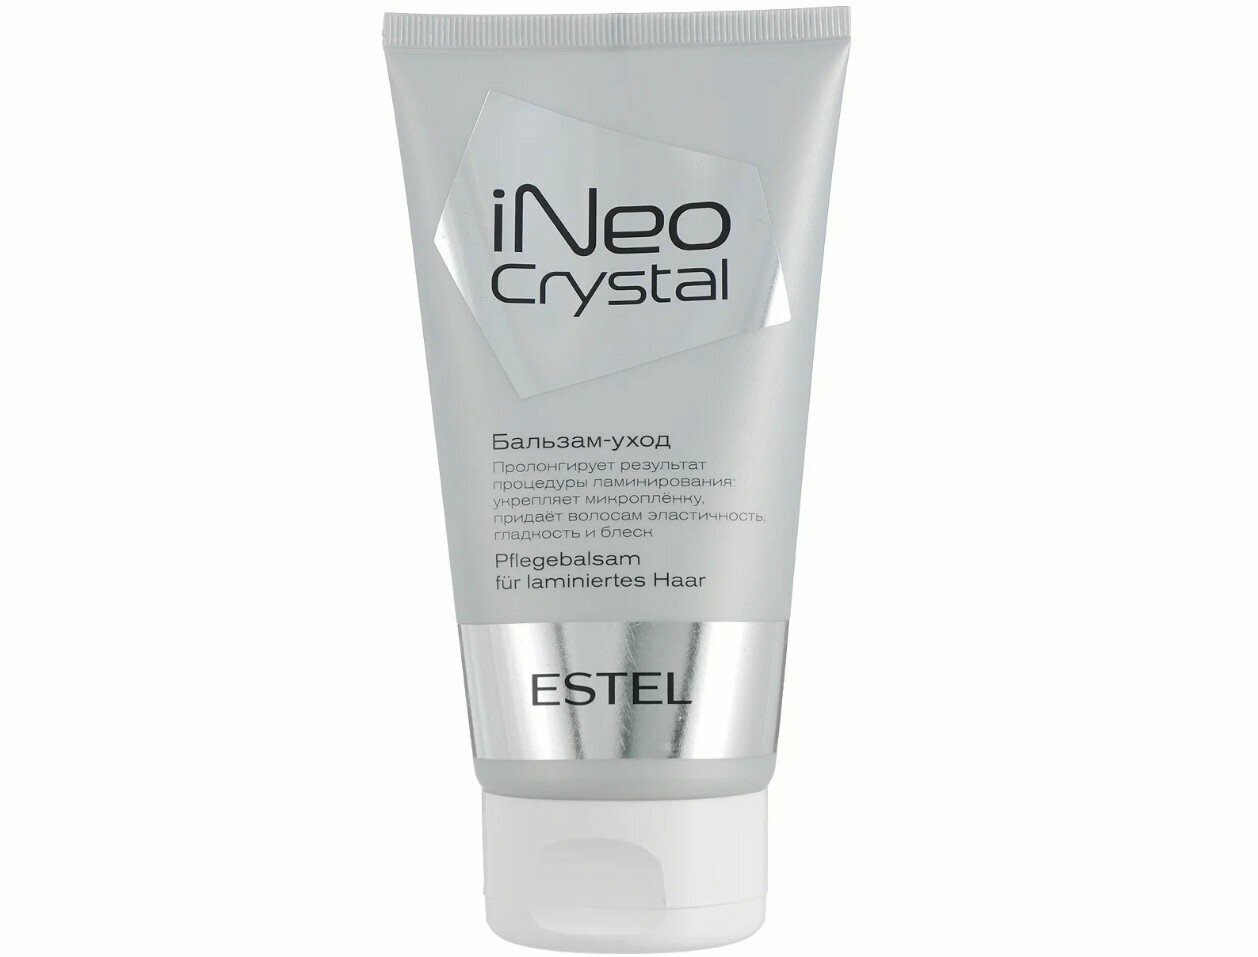 ESTEL бальзам-уход iNeo-Crystal для поддержания ламинирования волос, 150 мл